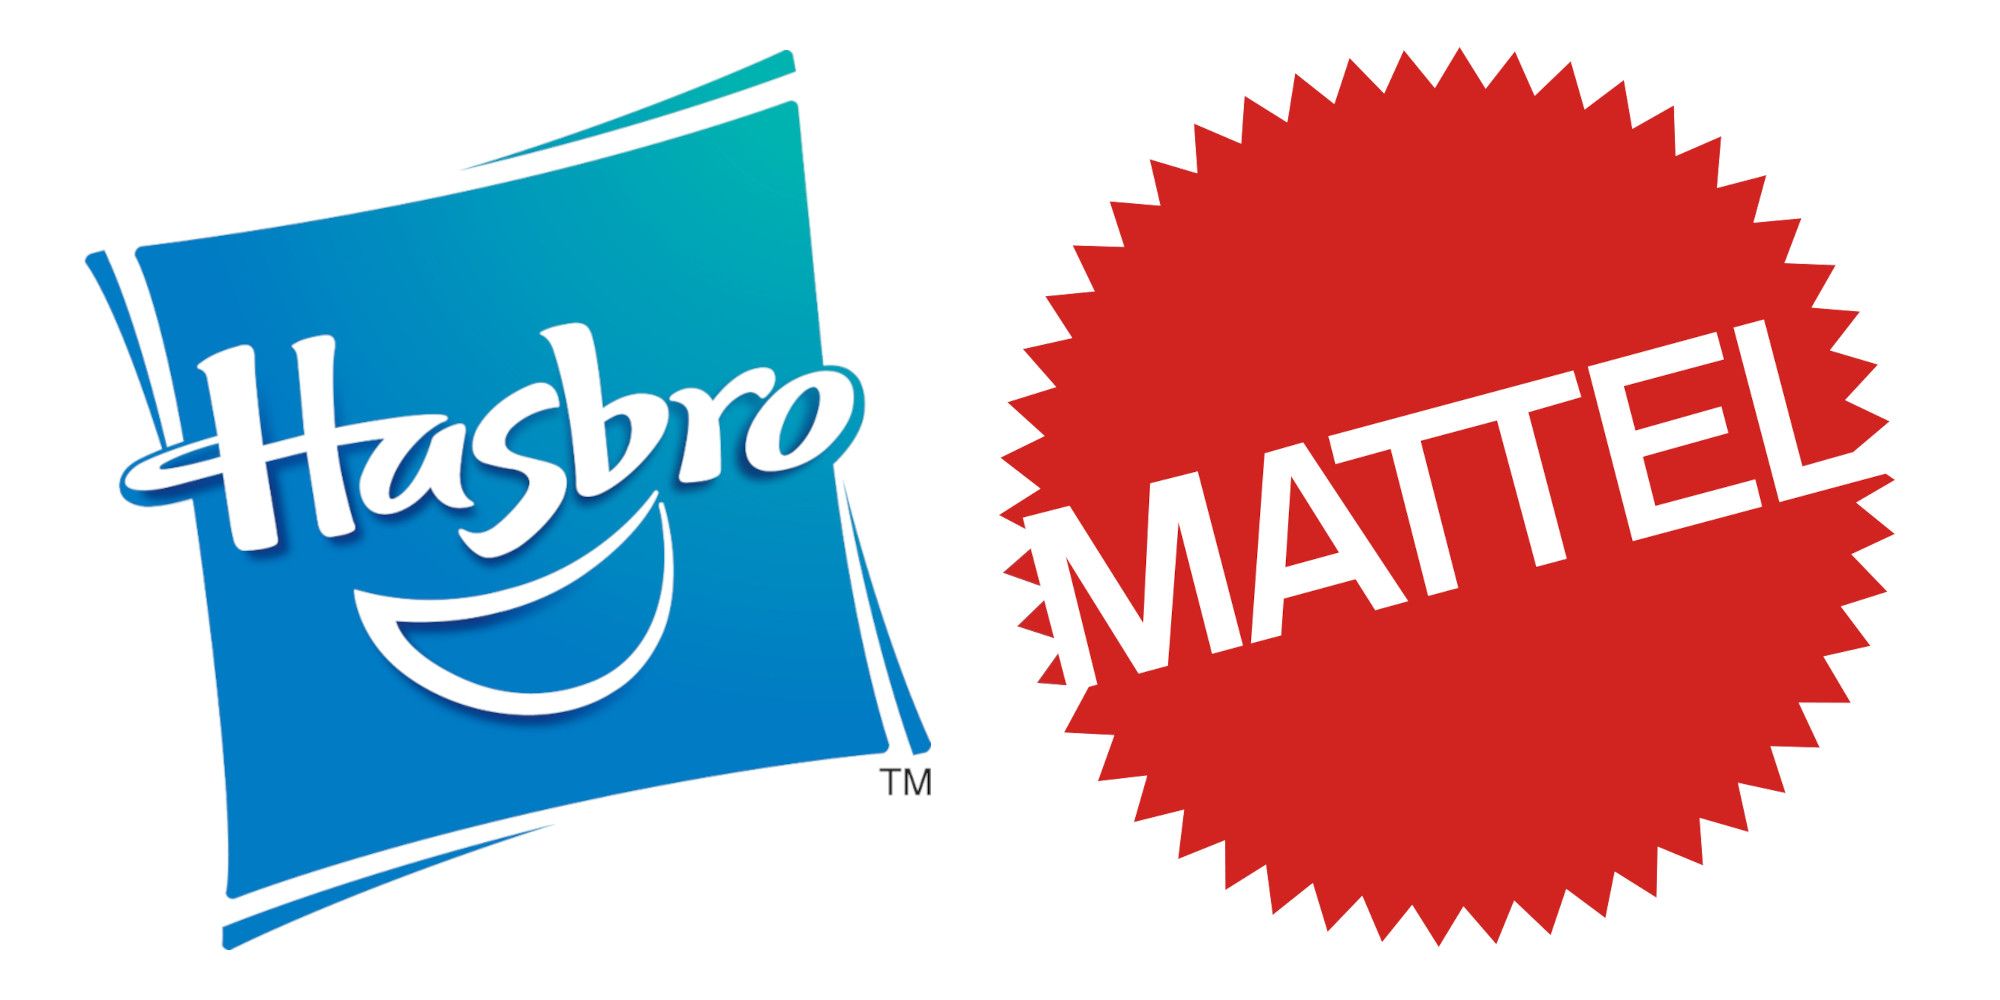 Hasbro and Mattel logo header